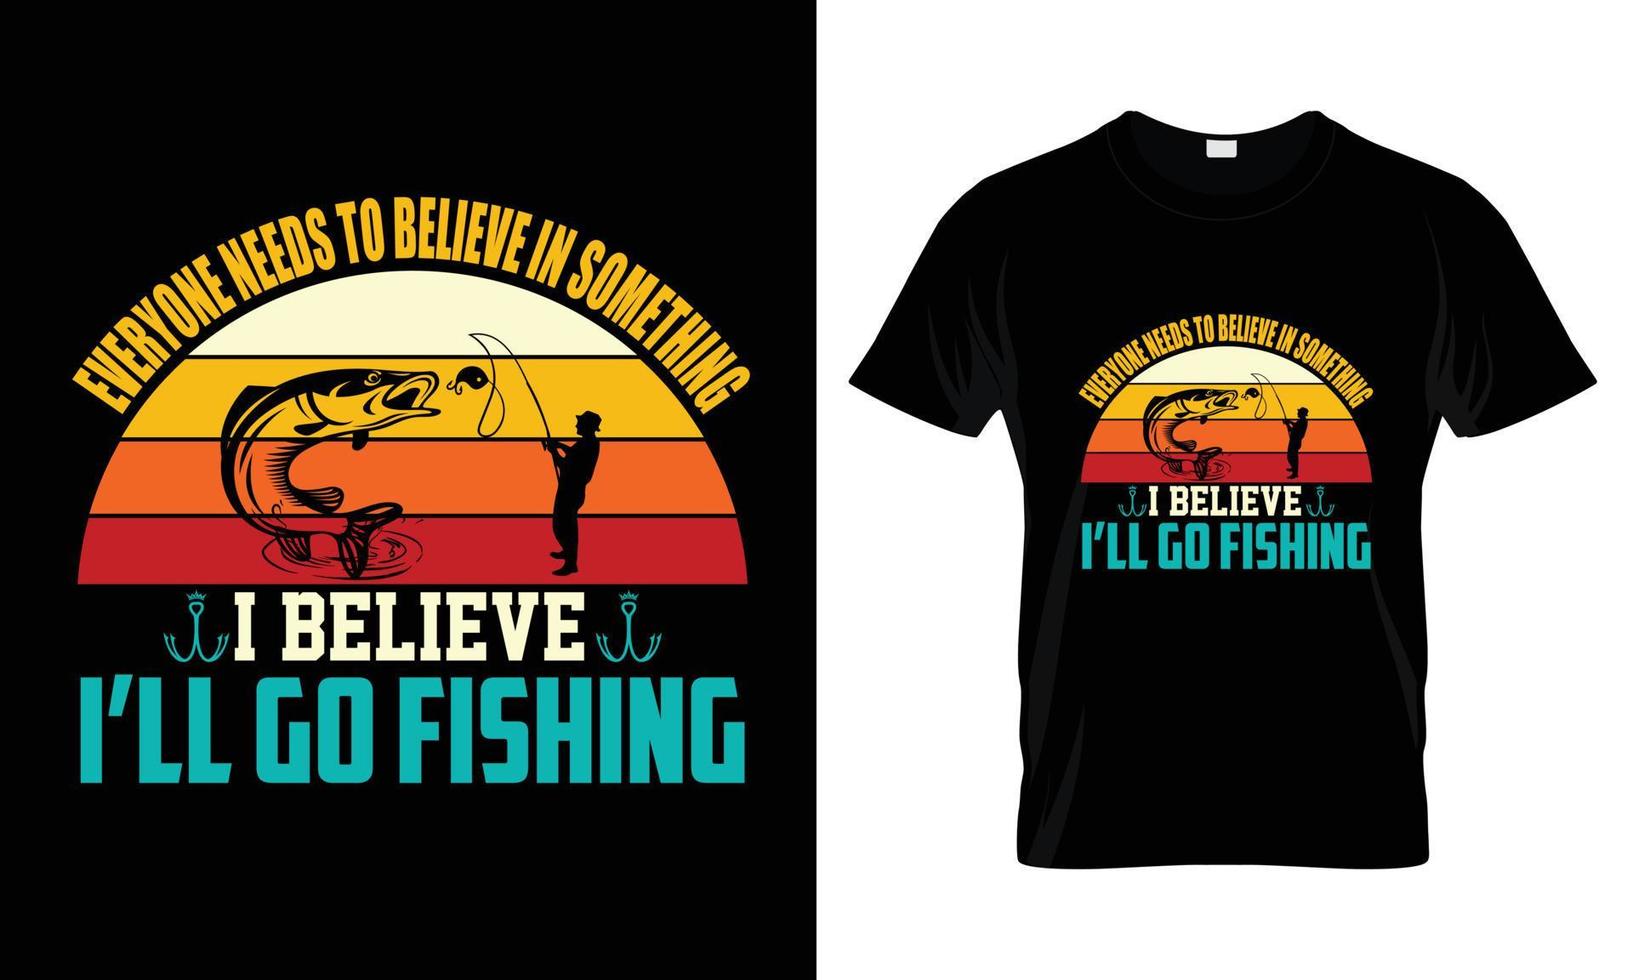 alla behöver tro på något jag tror att jag ska fiska t-shirtdesign vektor